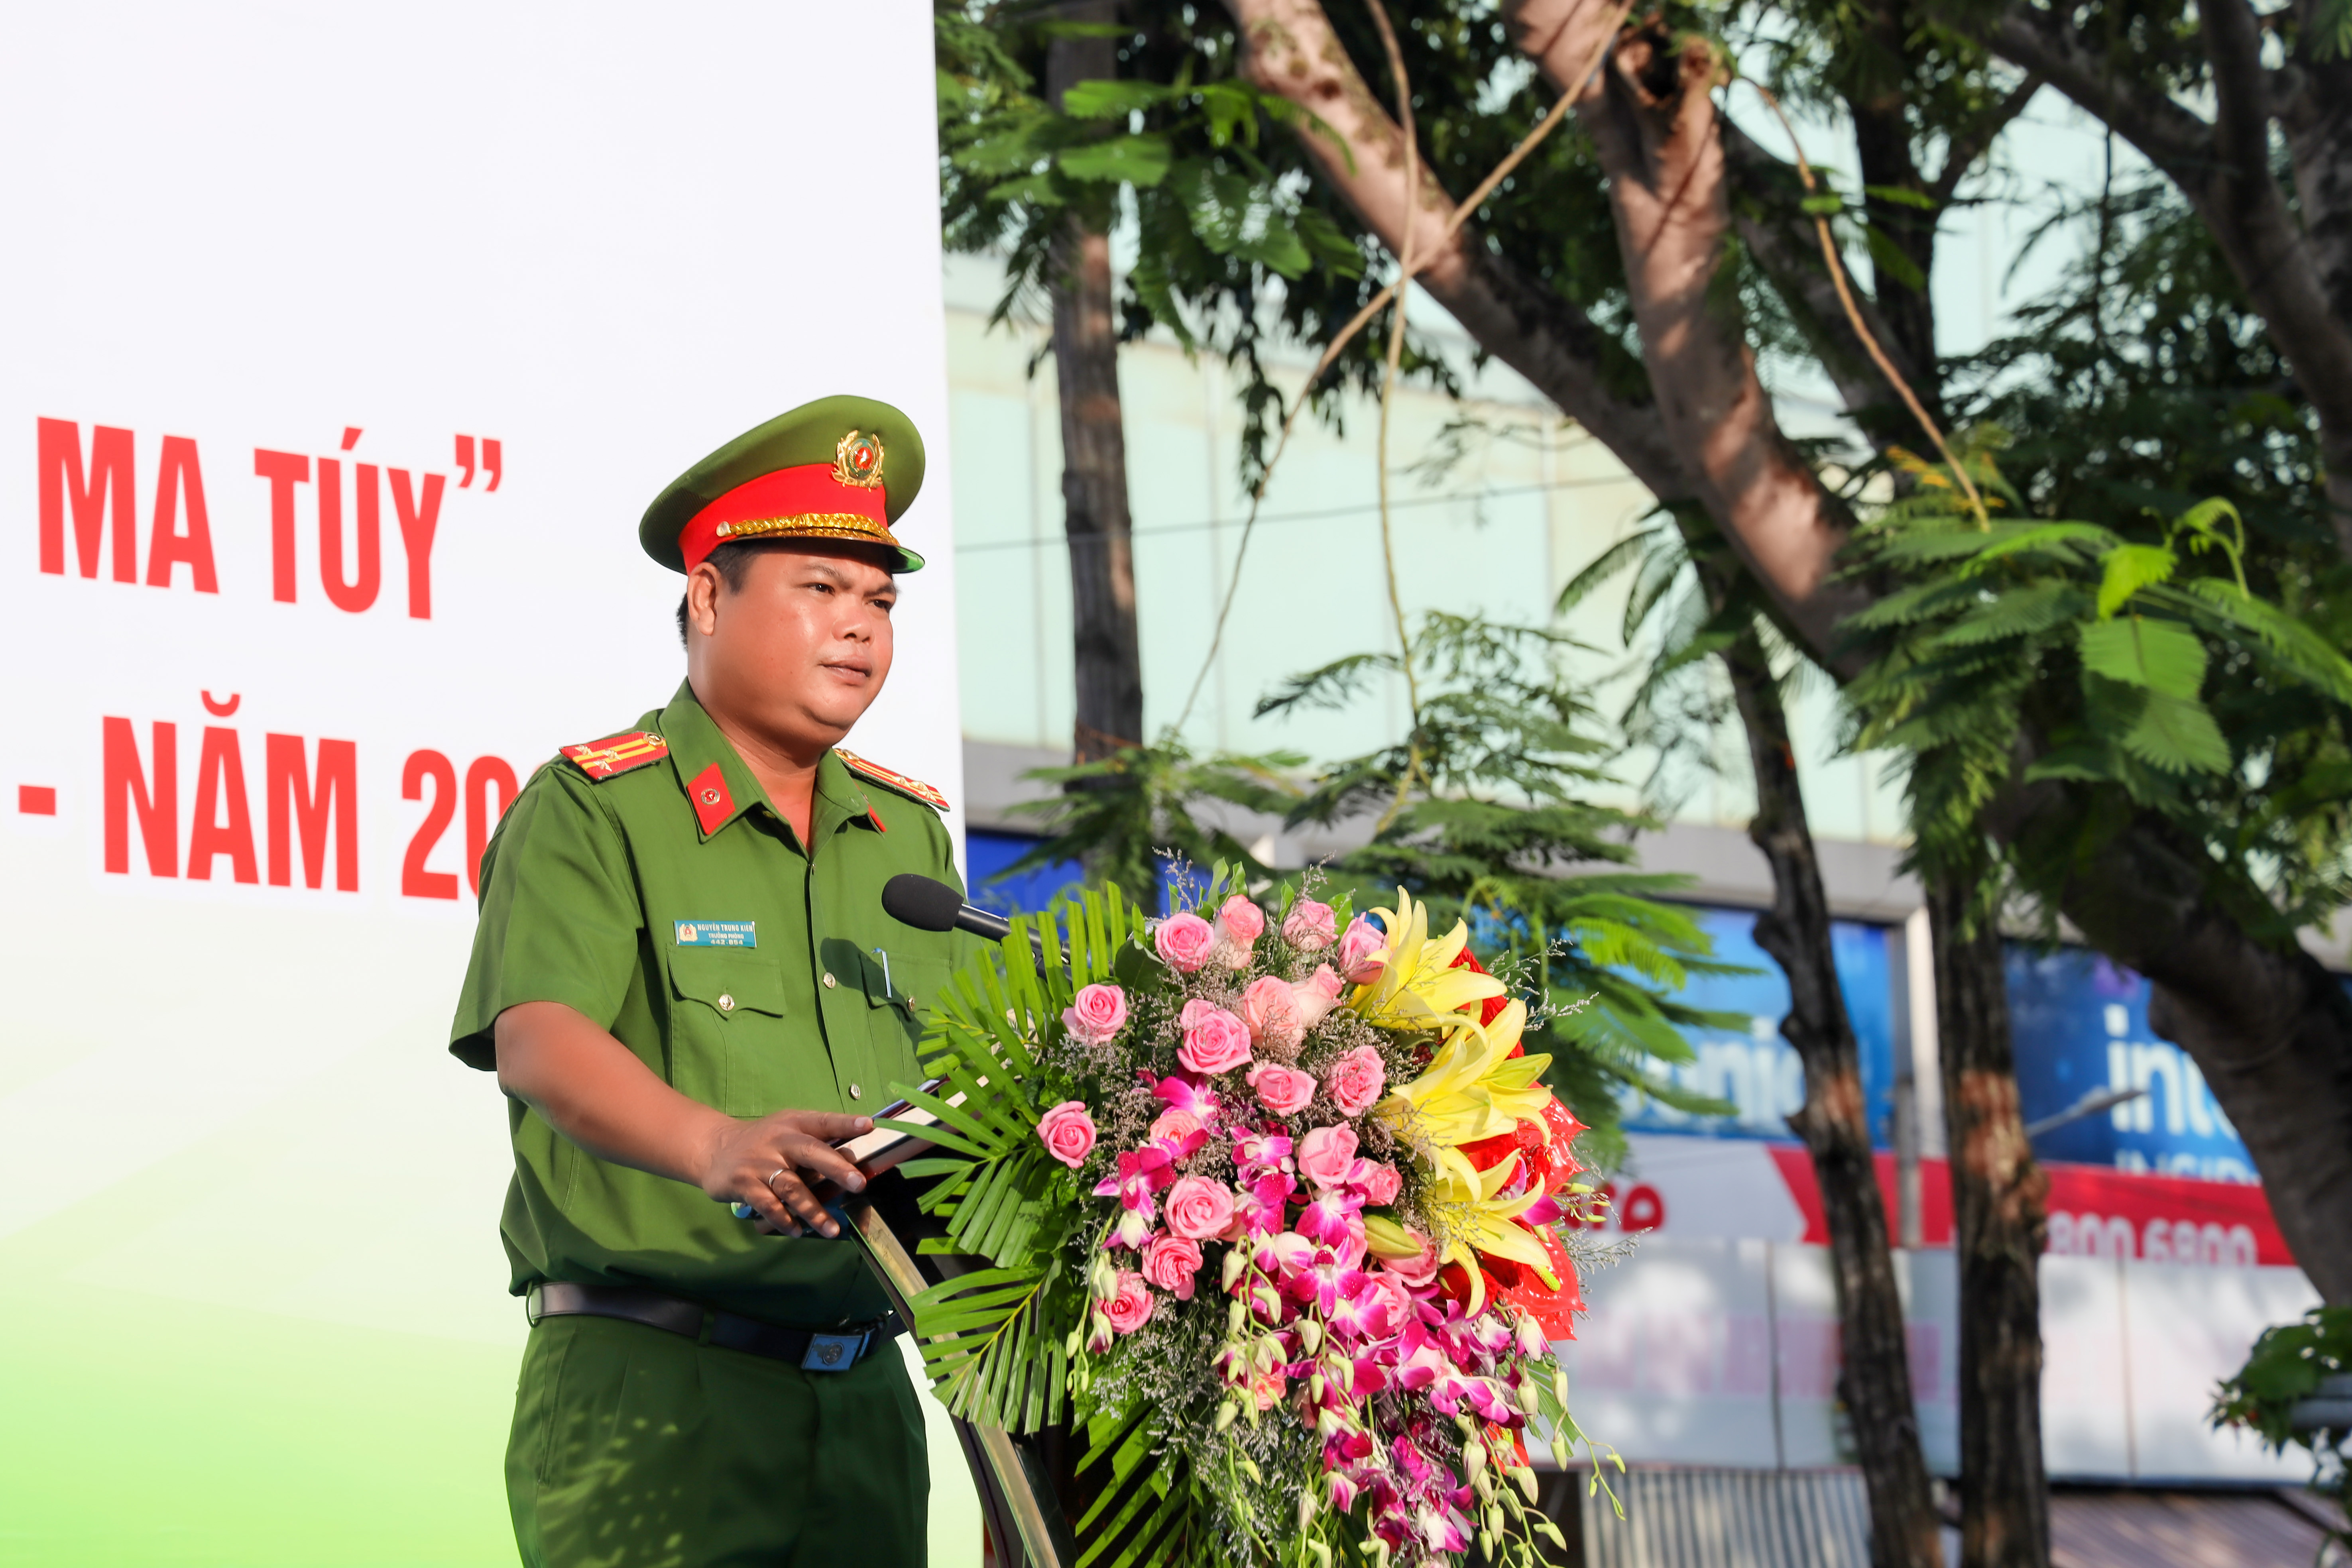 Thượng tá Nguyễn Trung Kiên - Trưởng phòng Cảnh sát điều tra tội phạm về ma túy, Công an TP. Cần Thơ thông qua báo cáo tóm tắt tình hình, kết quả công tác phòng, chống ma túy và triển khai thực hiện tháng hành động phòng, chống ma túy năm 2022 trên địa bàn thành phố.